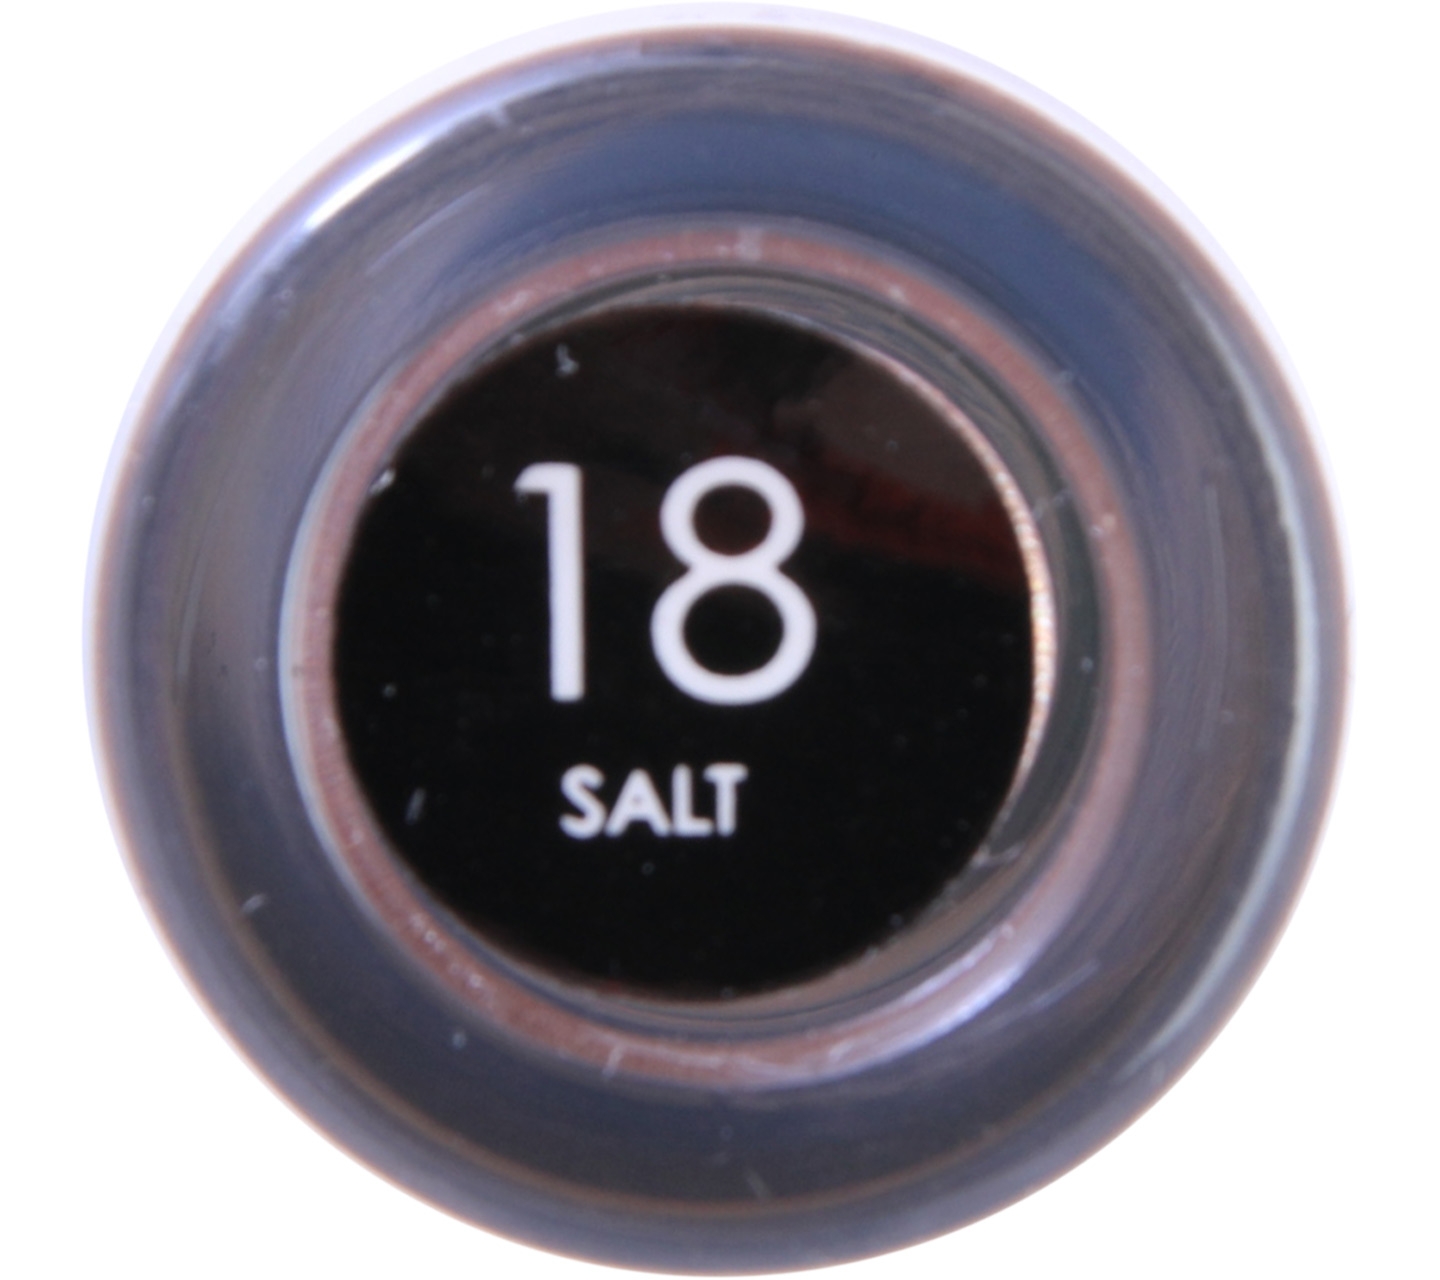 FOCALLURE LUXE 18 Salt Lips